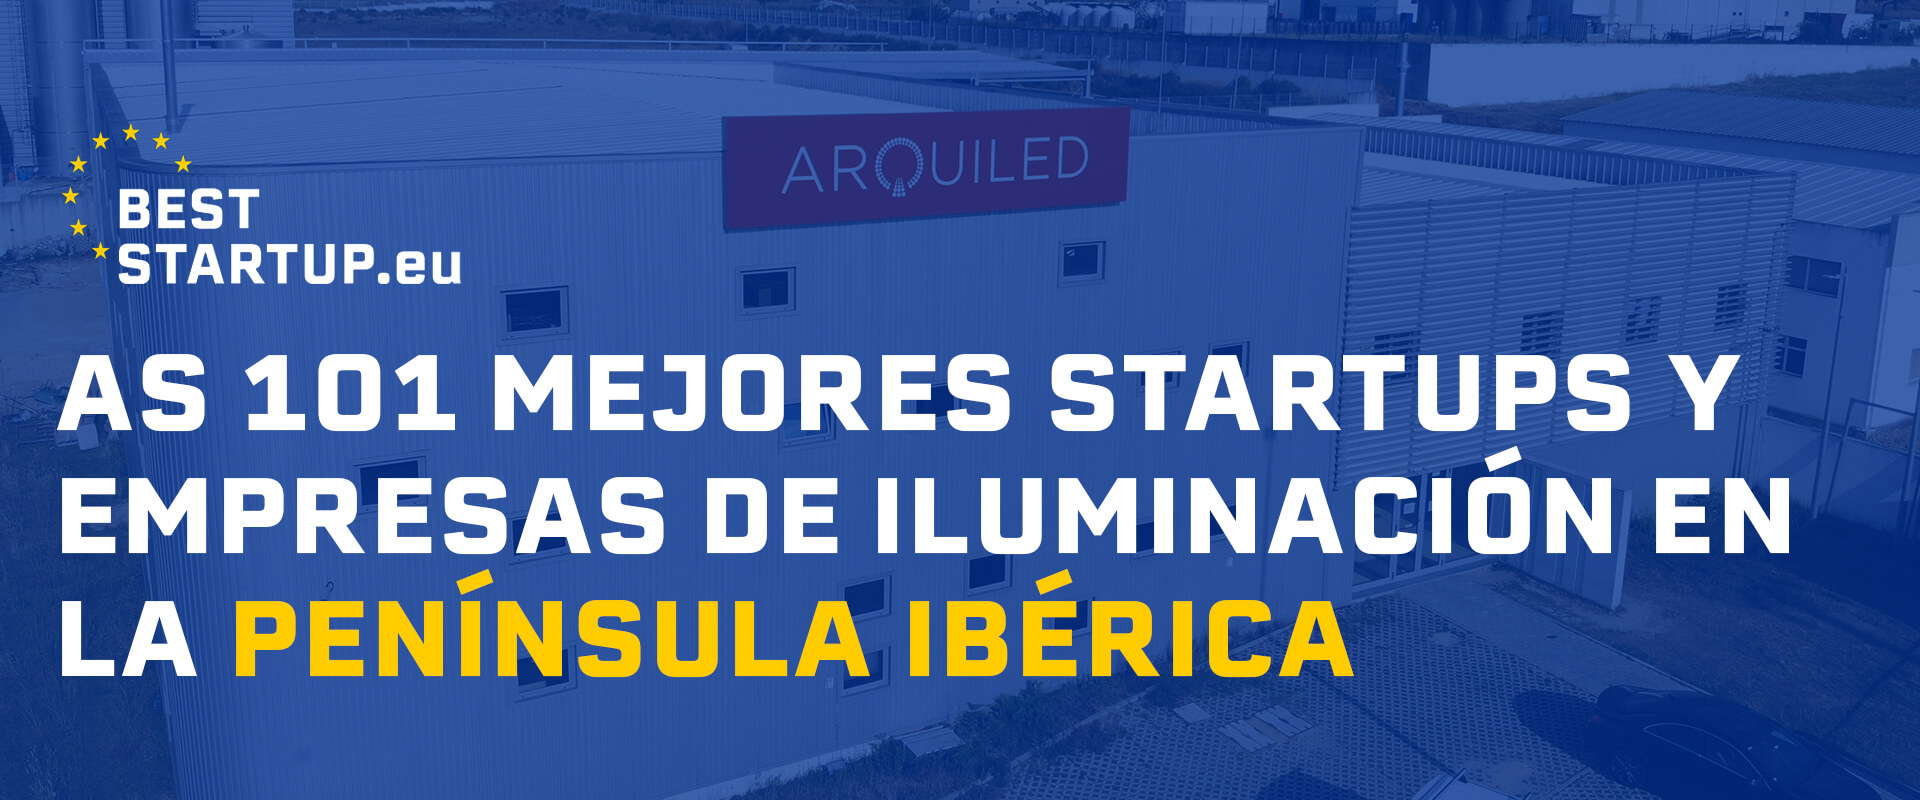 Arquiled - Top 101 Empresas e Startups na Península Ibérica